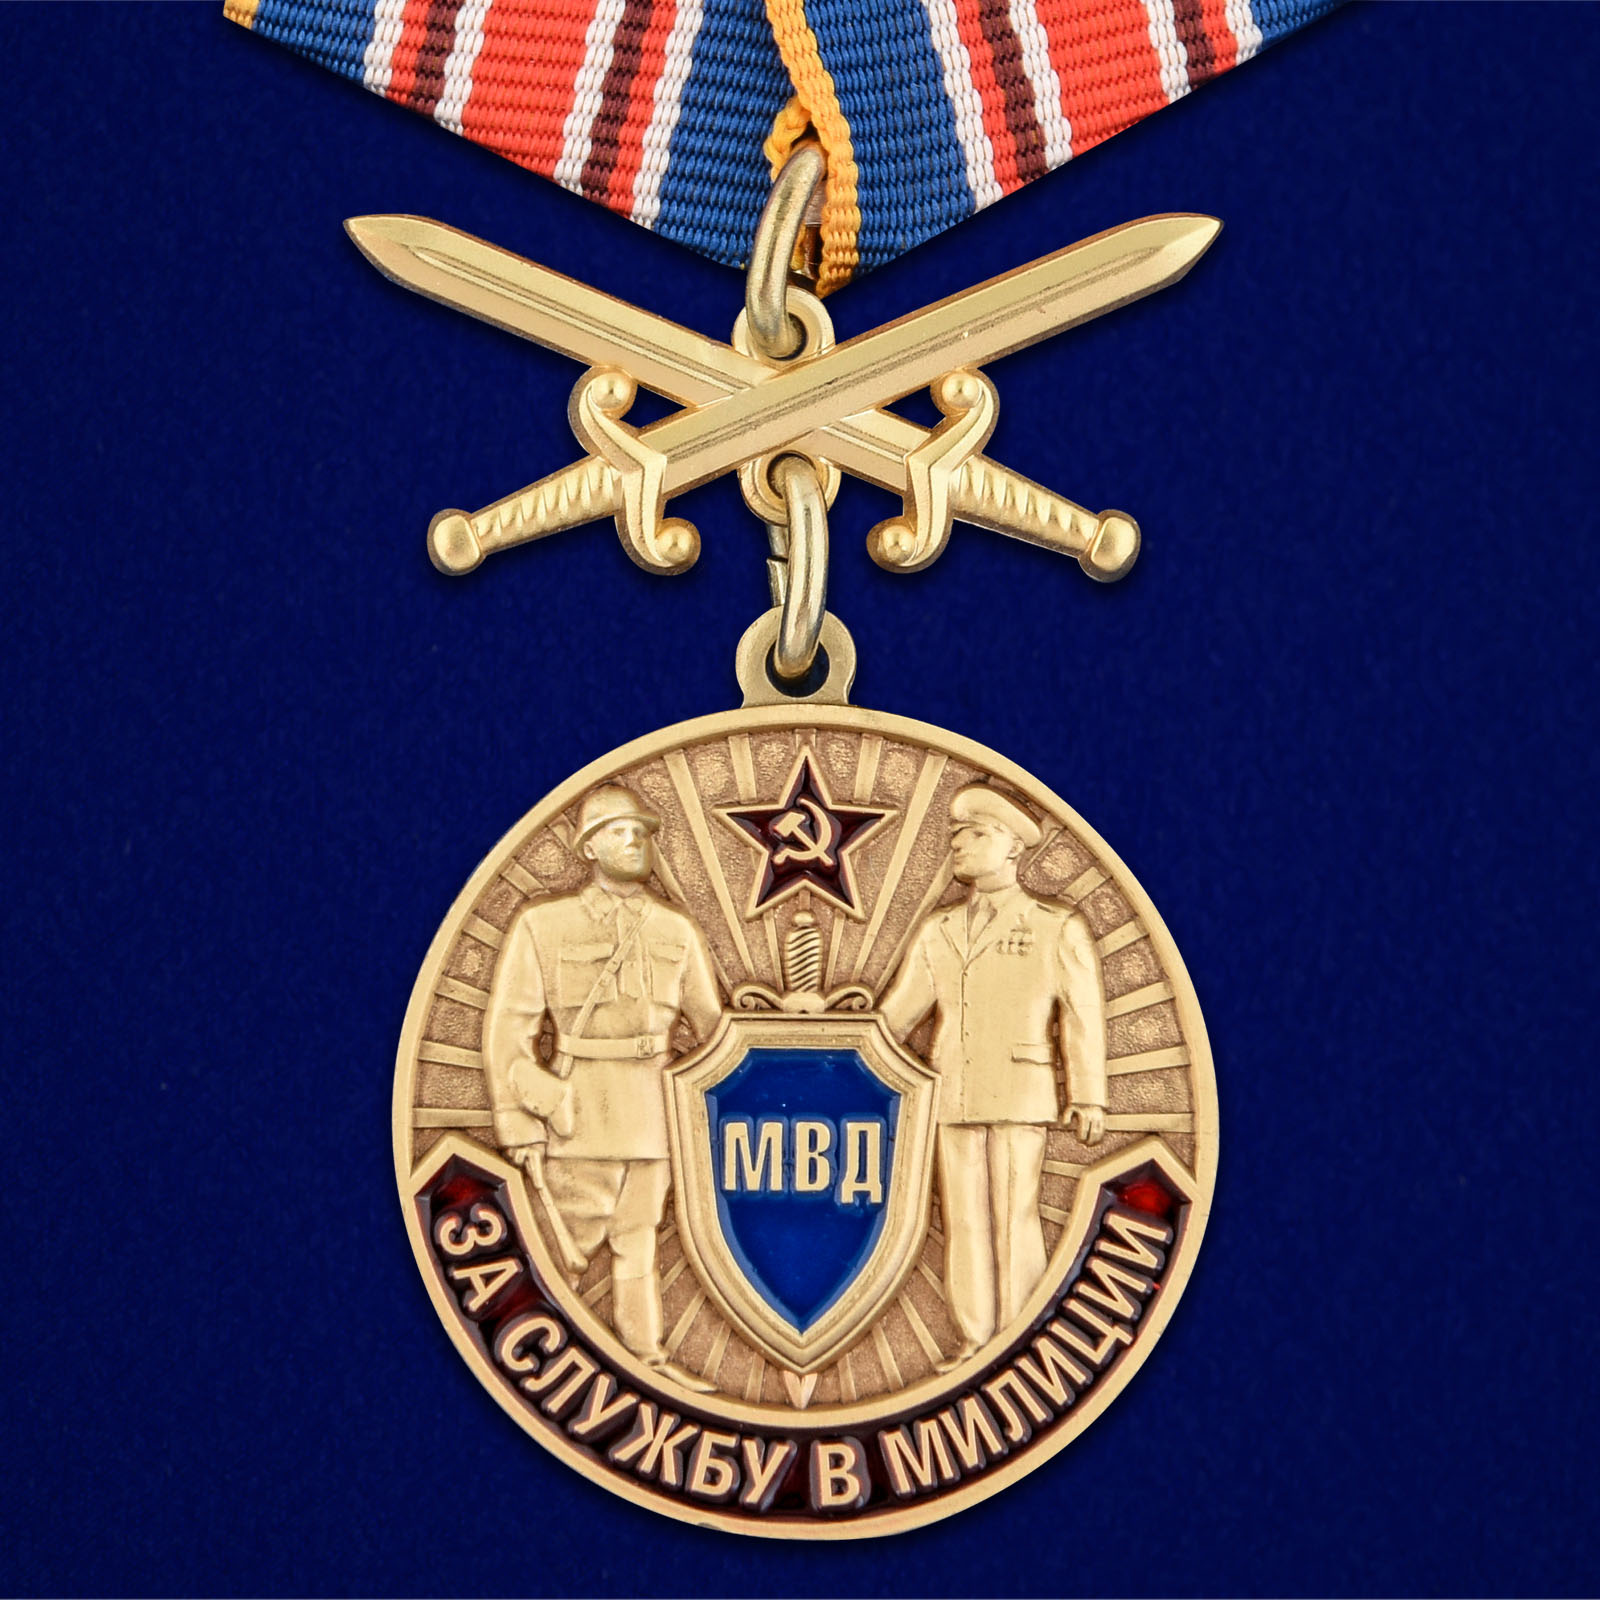 Купить медаль За службу в милиции онлайн выгодно